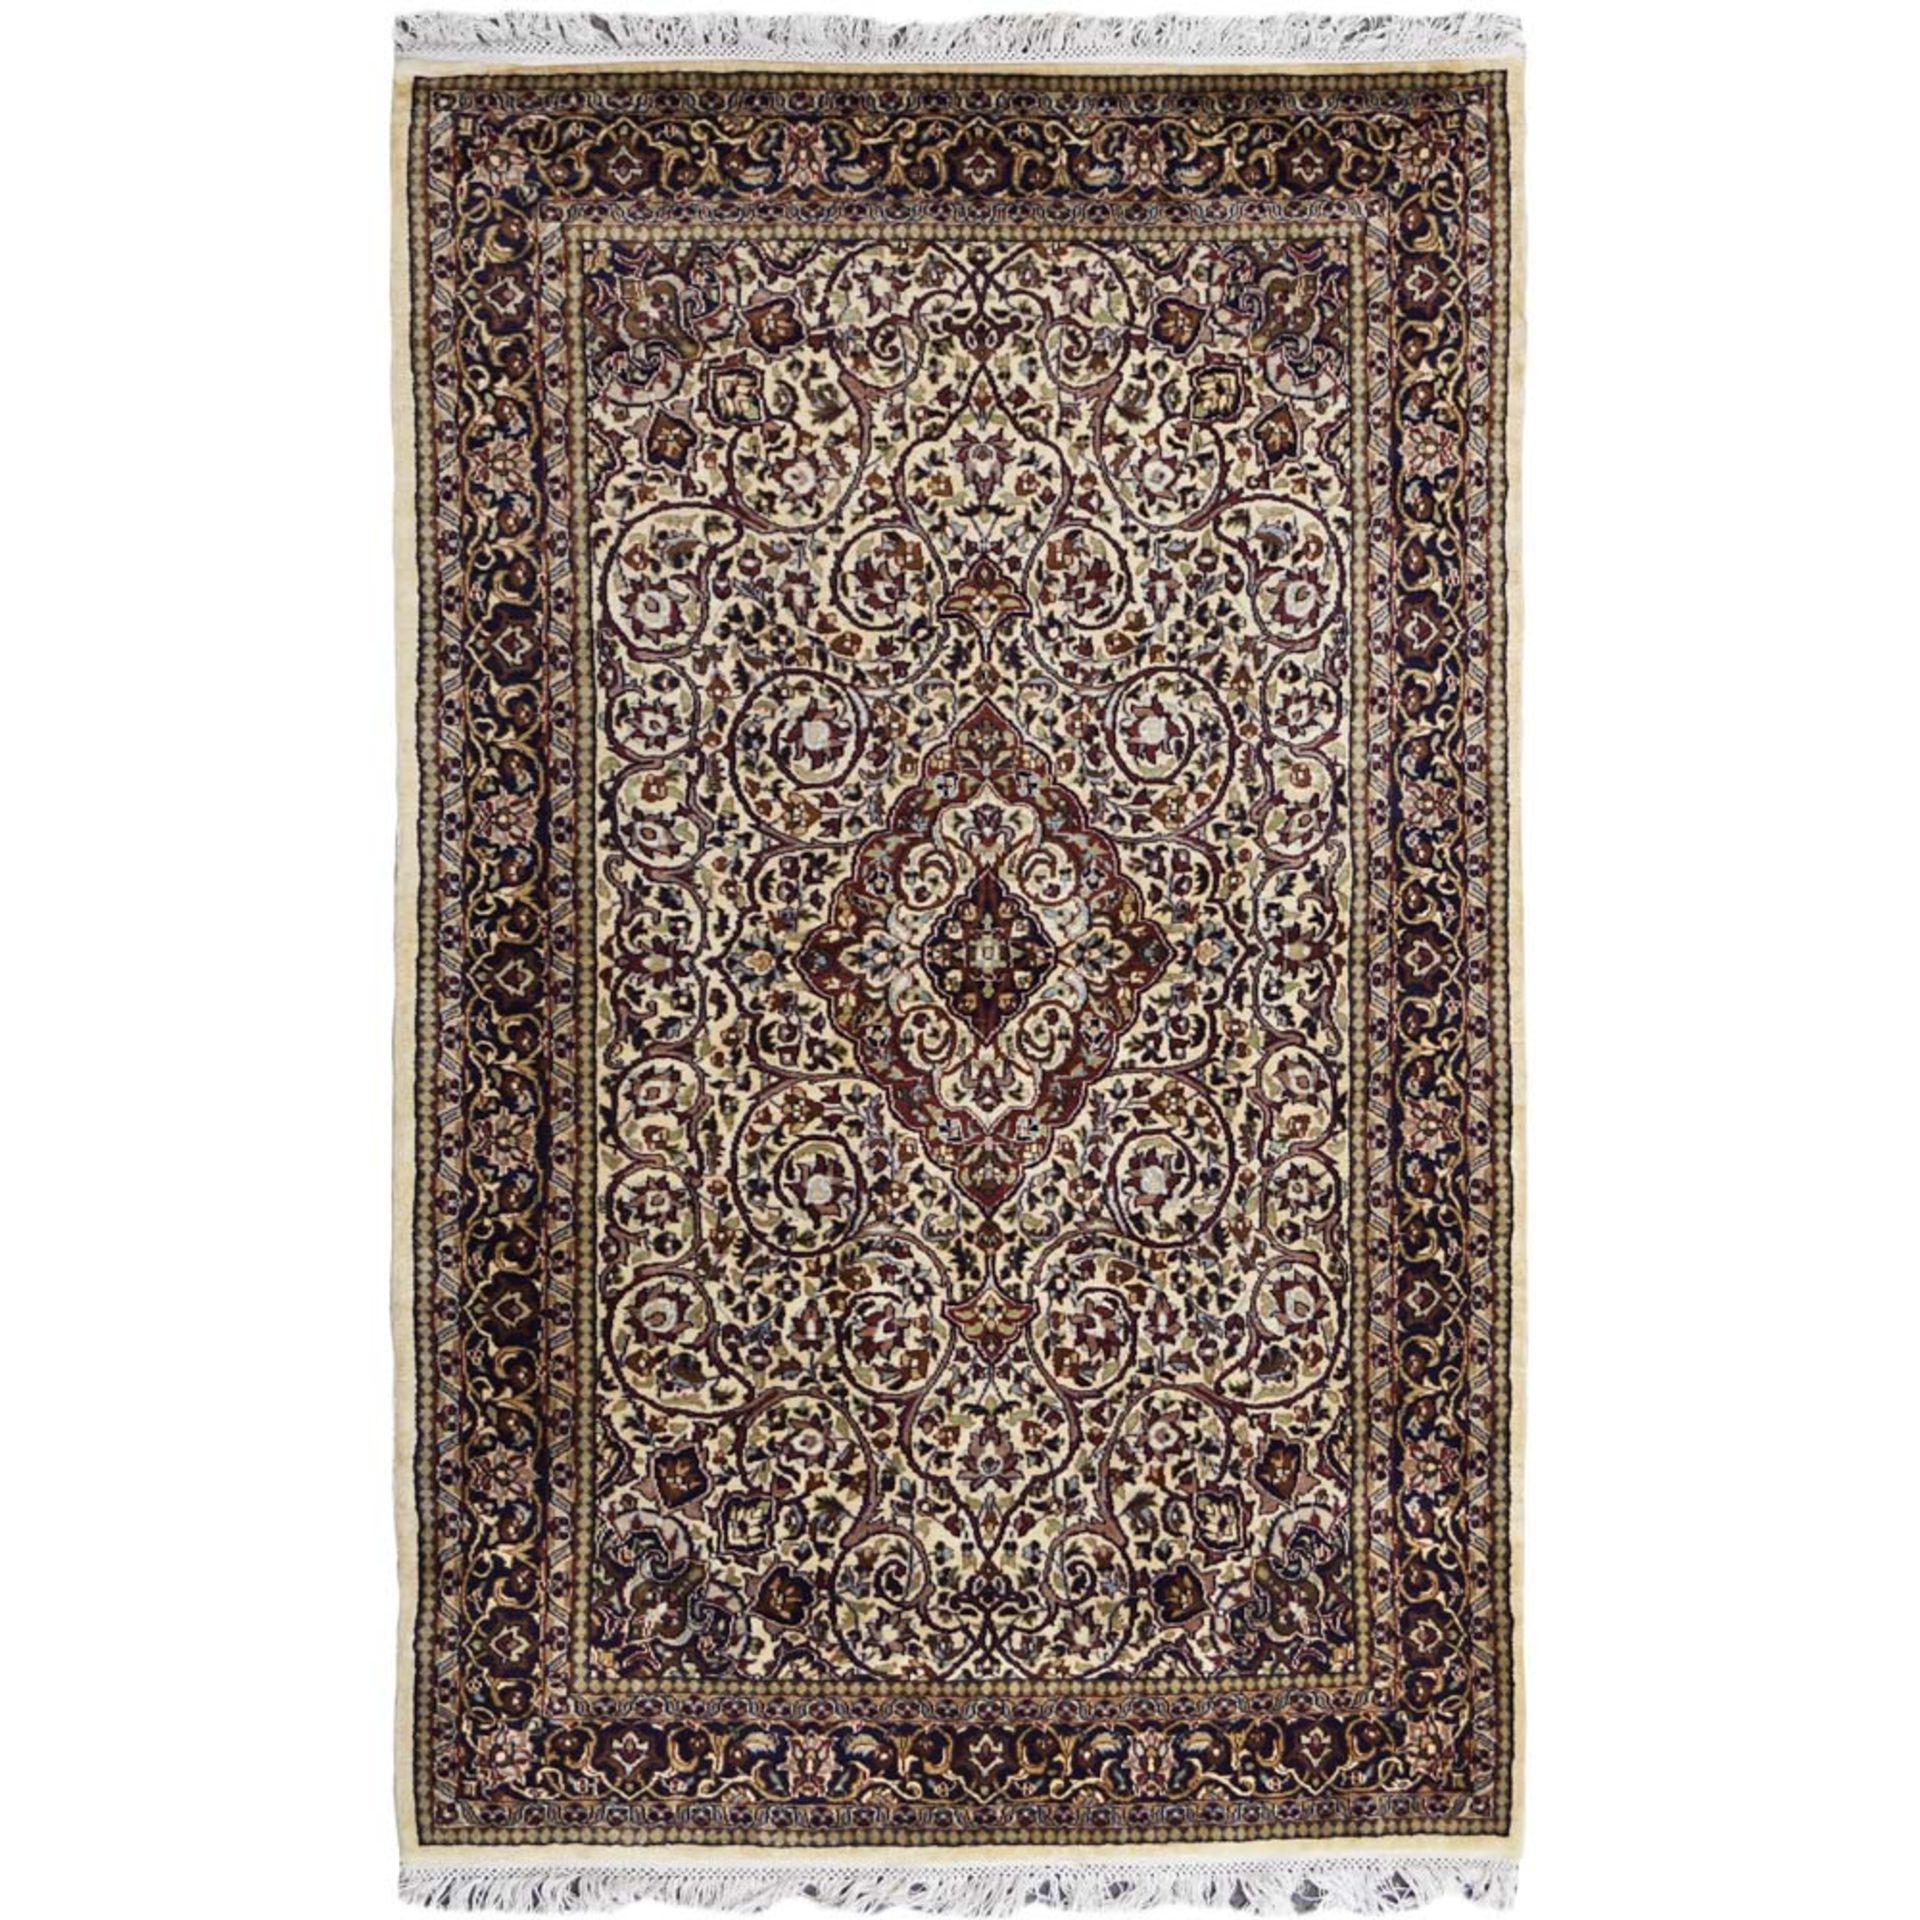 Oriental carpet 20th century 192x125 cm.